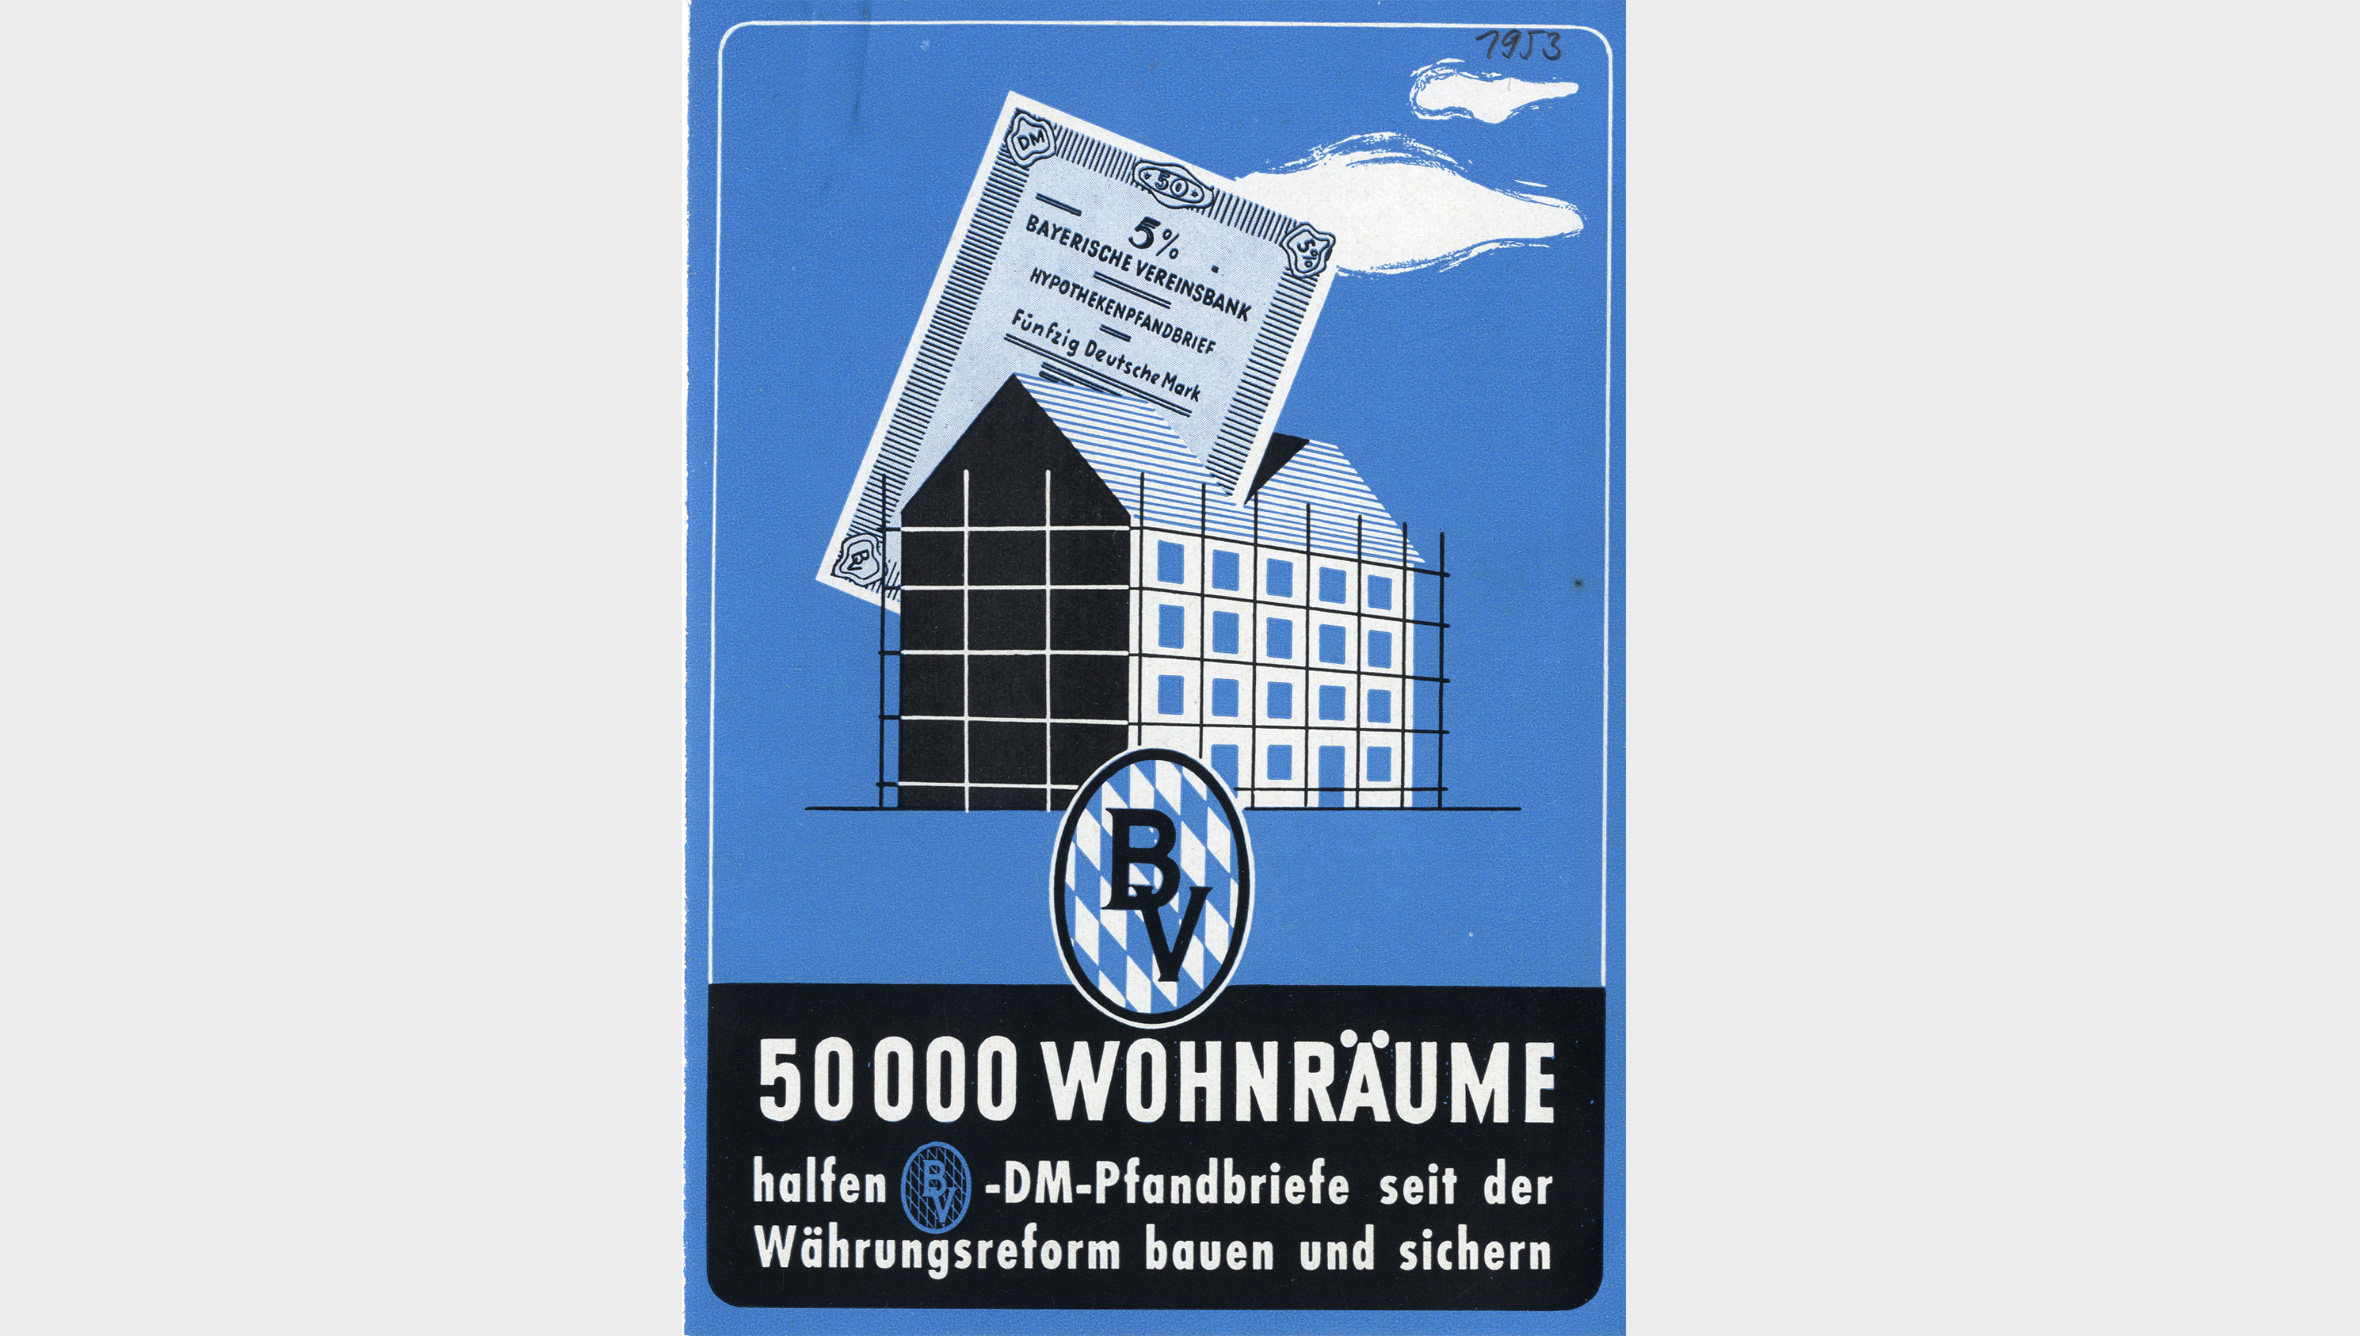 Beim Wiederaufbau bestand ein enormer Bedarf an Wohnungen. Die Hypothekenabteilung der Bayerischen Vereinsbank emittierte hierzu Pfandbriefe. Die Unternehmen investierten wieder. Die Bayerische Vereinsbank gab ihnen Kredite.